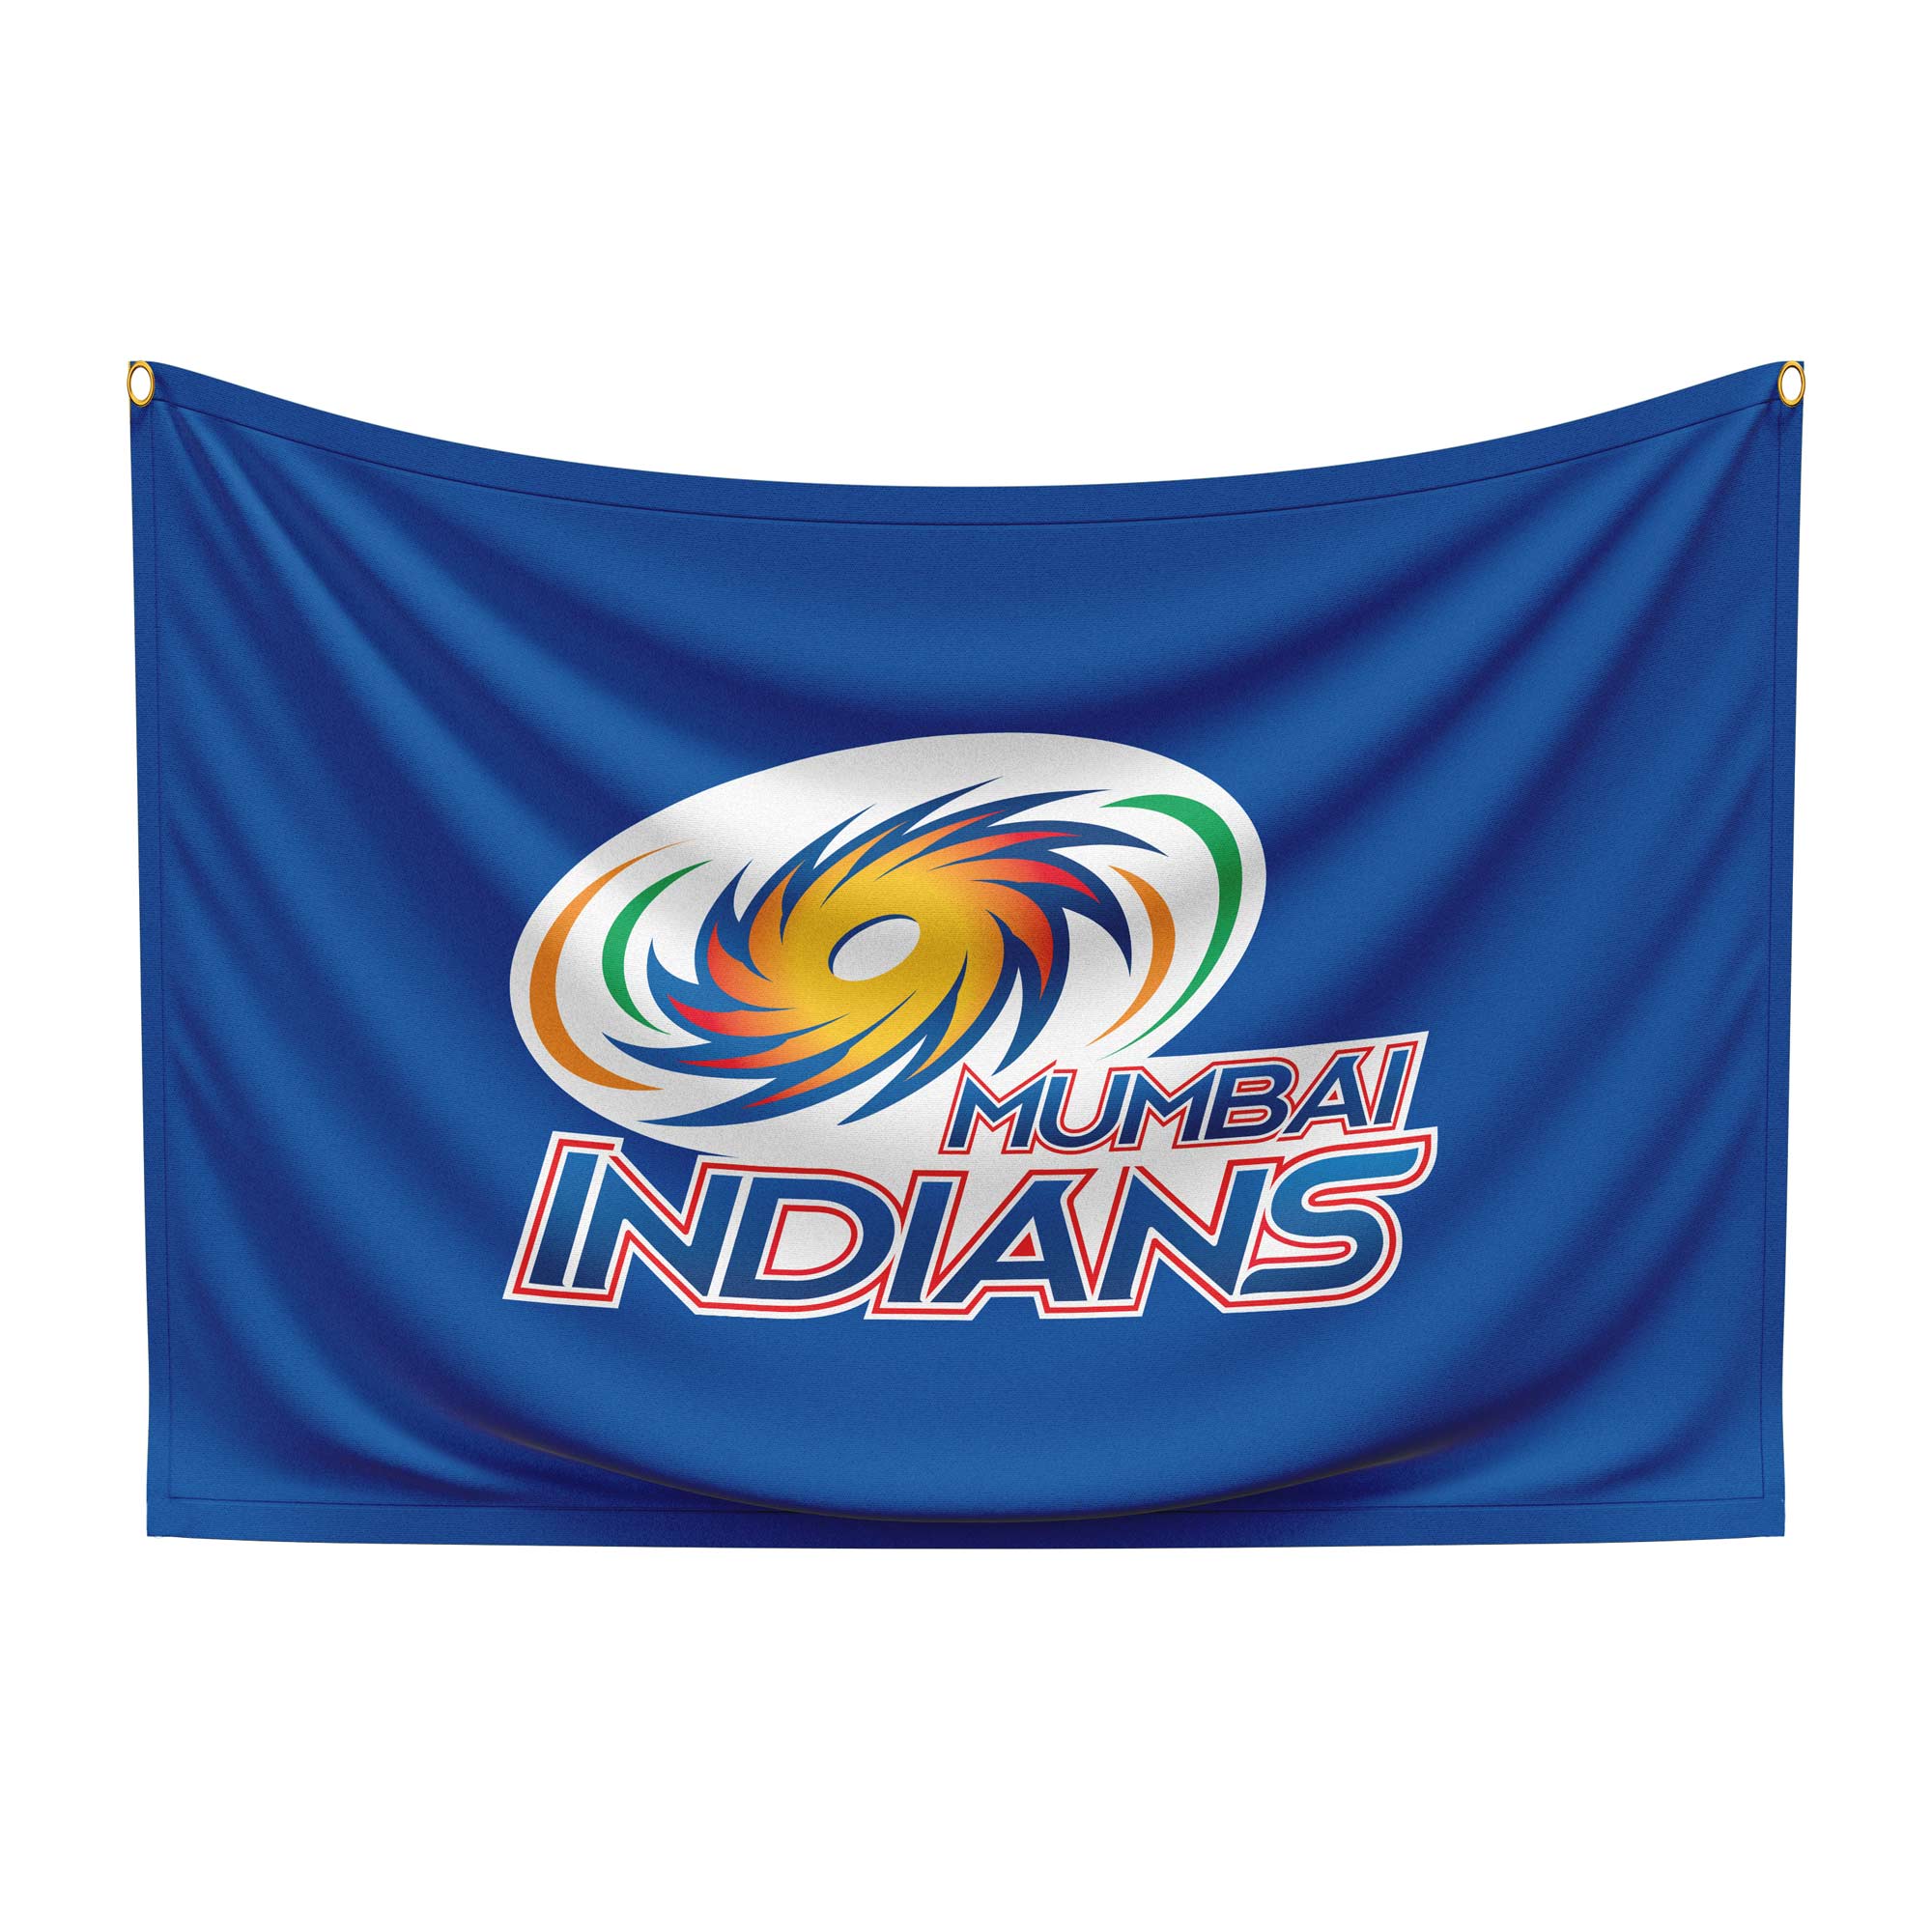 IPL - Mumbai Indians Logo PNG Vector (AI) Free Download